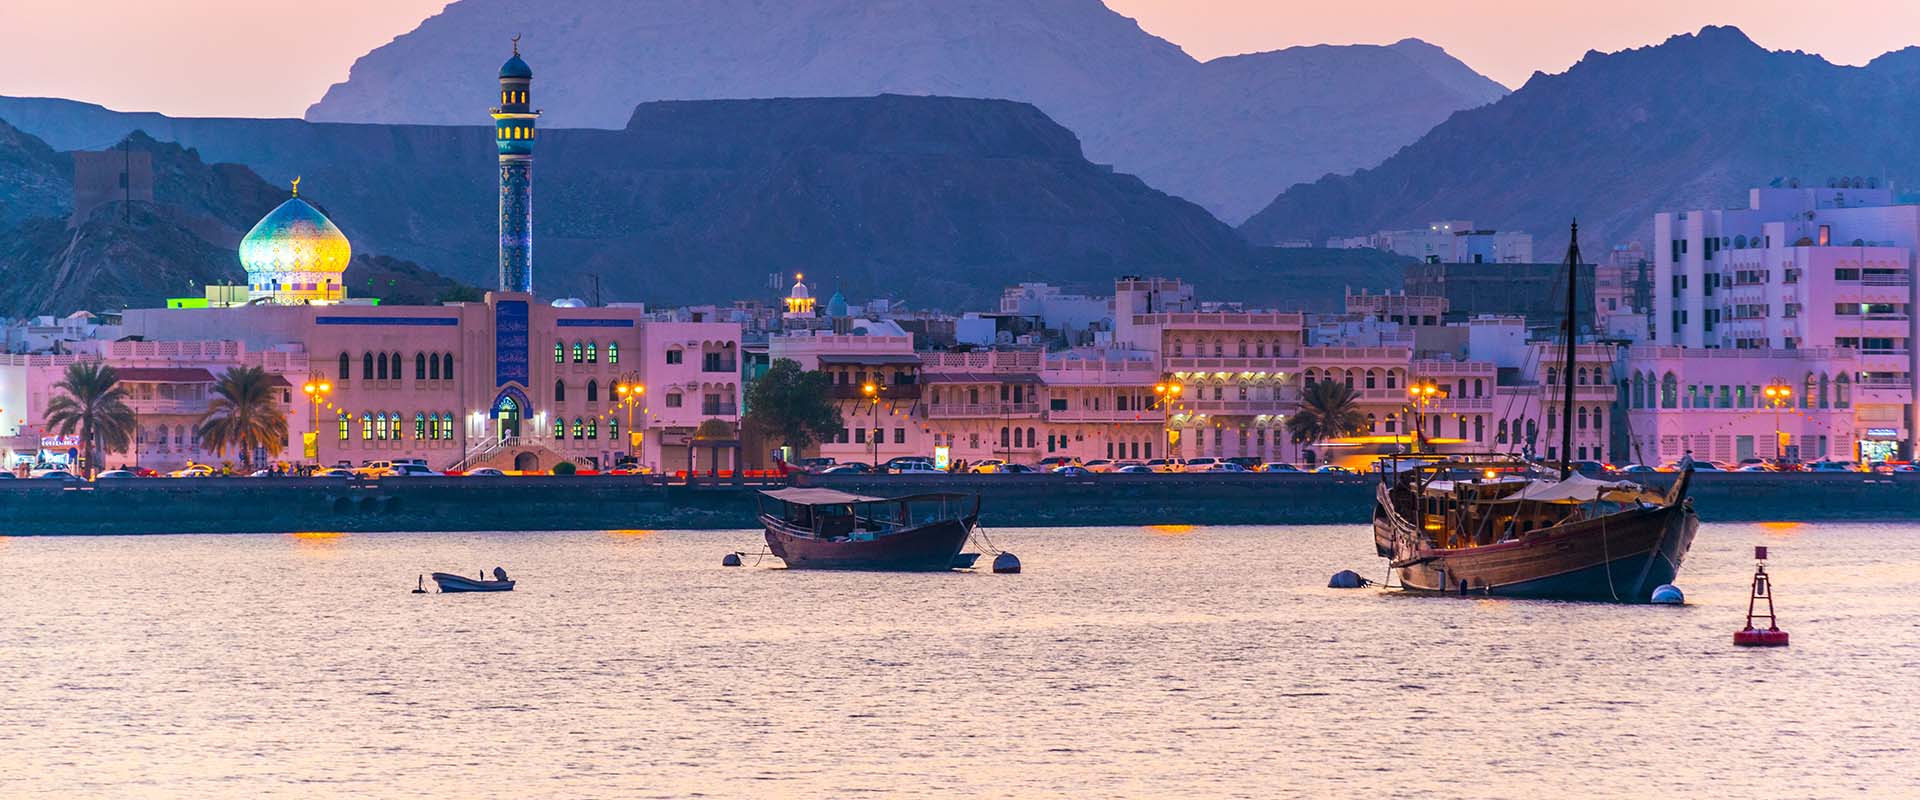 Bateaux de Croisière Aventure - Oman - LiveAboard.com